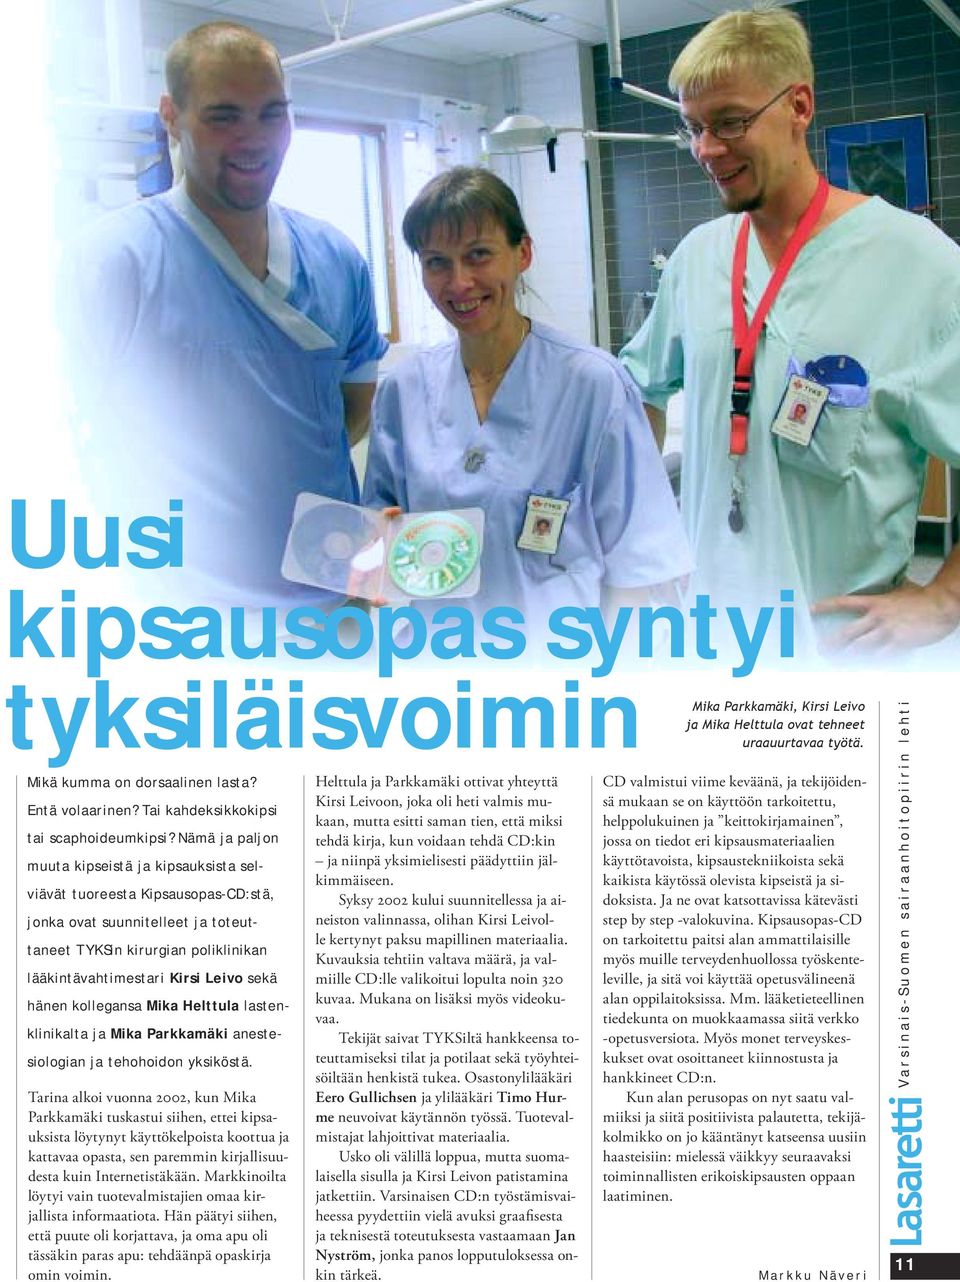 hänen kollegansa Mika Helttula lastenklinikalta ja Mika Parkkamäki anestesiologian ja tehohoidon yksiköstä.